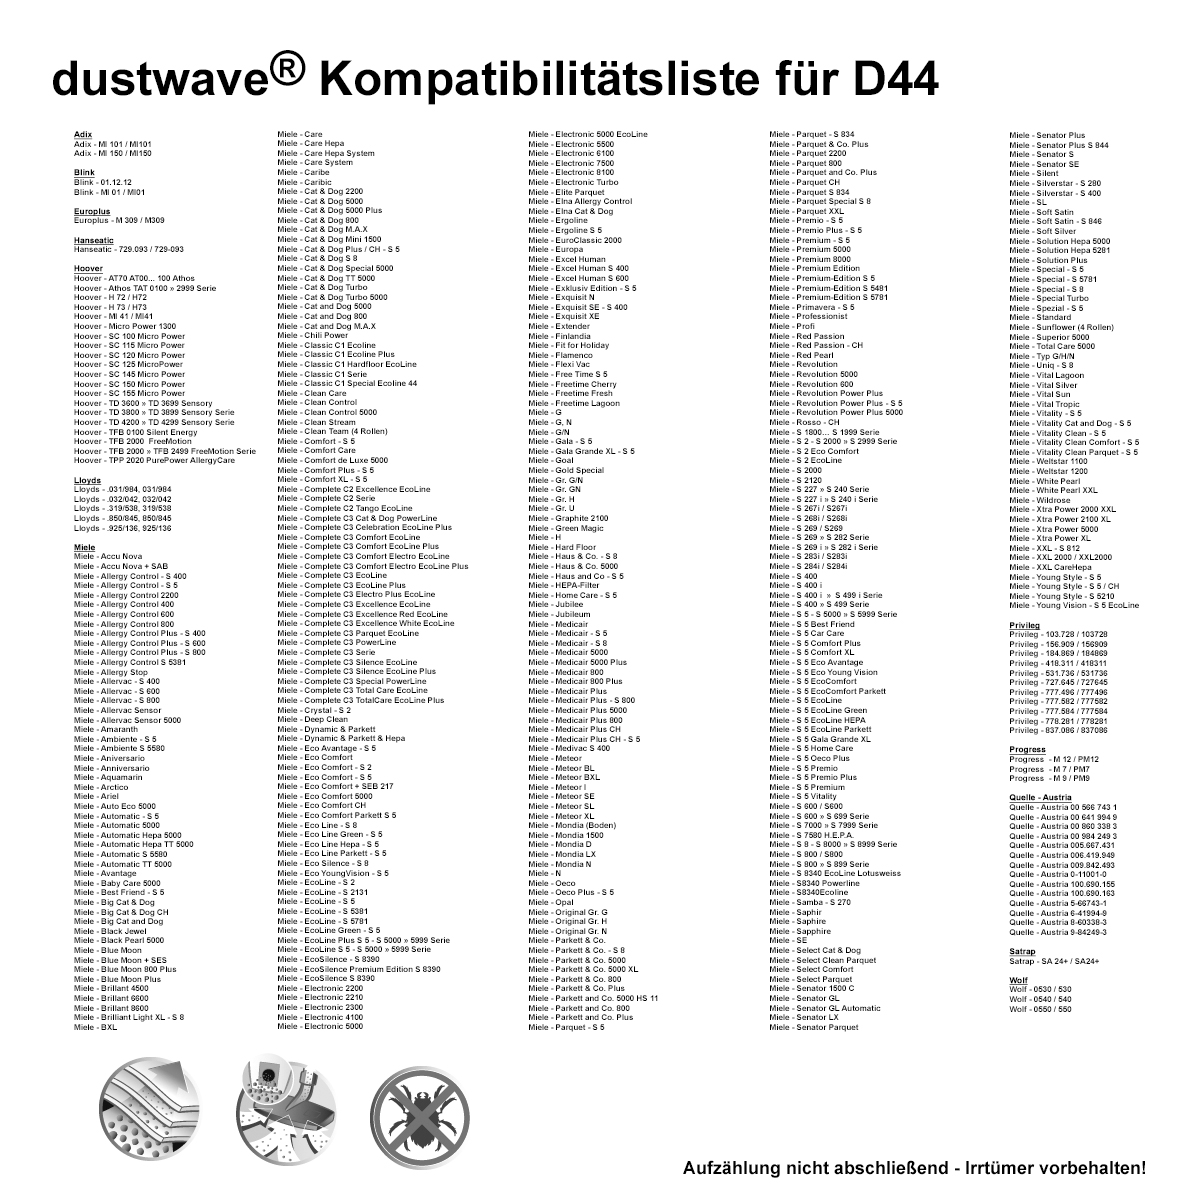 Dustwave® 5 Staubsaugerbeutel für Miele S445i / S 445 i - hocheffizient, mehrlagiges Mikrovlies mit Hygieneverschluss - Made in Germany